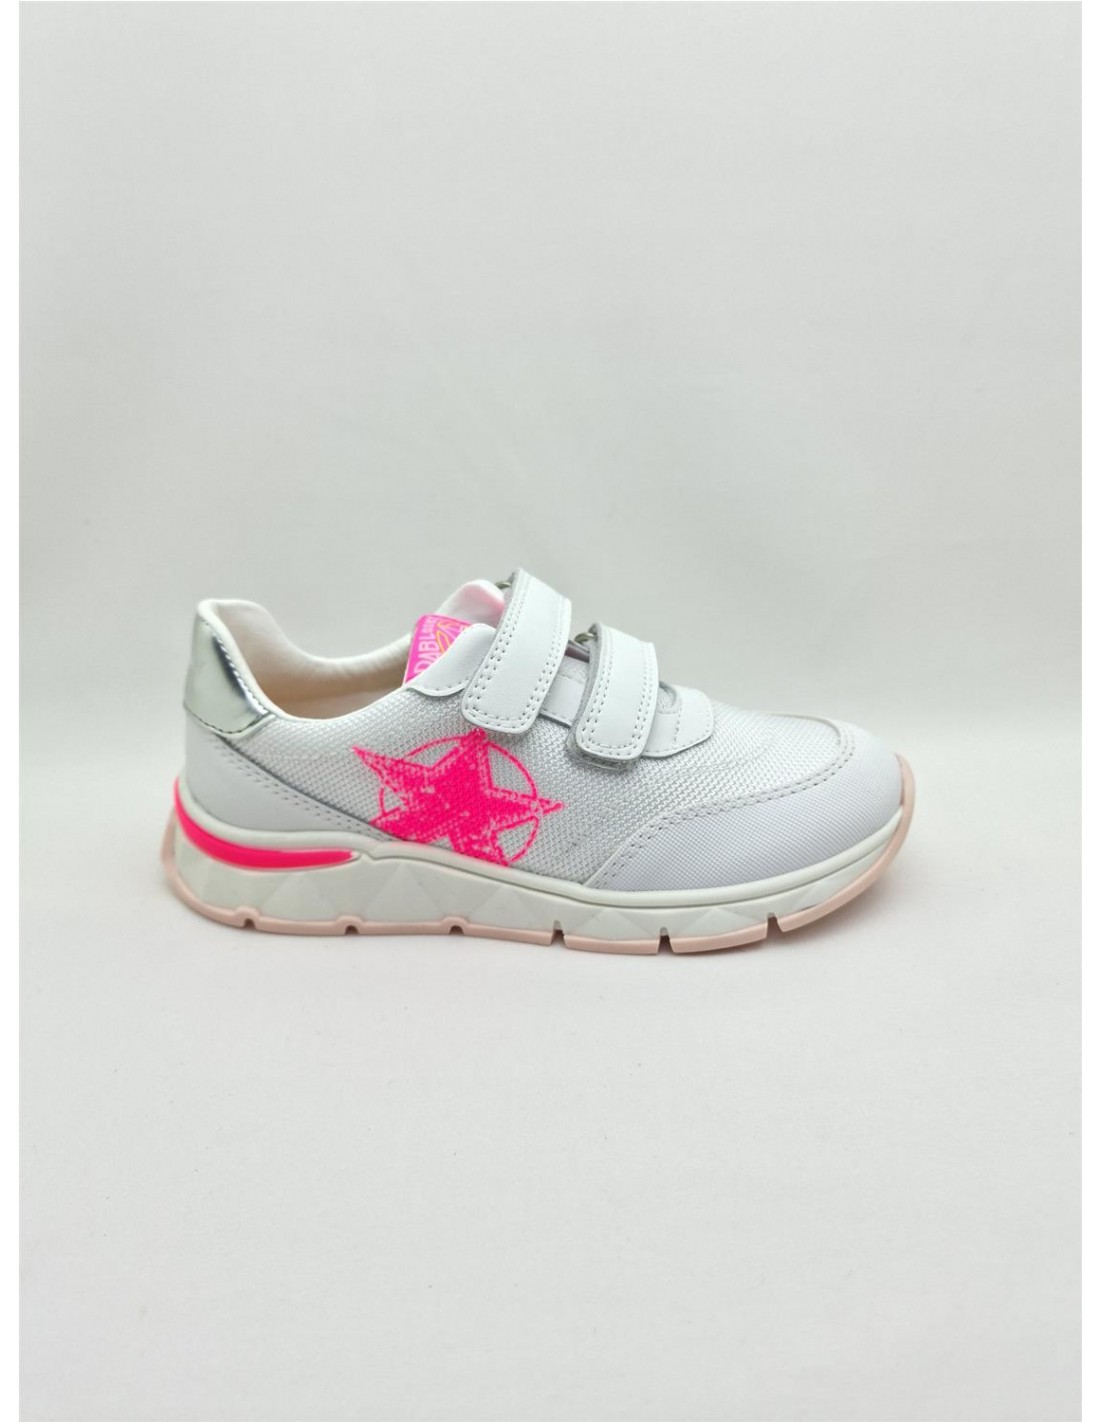 Кроссовки Pablosky для девочек, размер 28, белые с розовым принтом, 298707